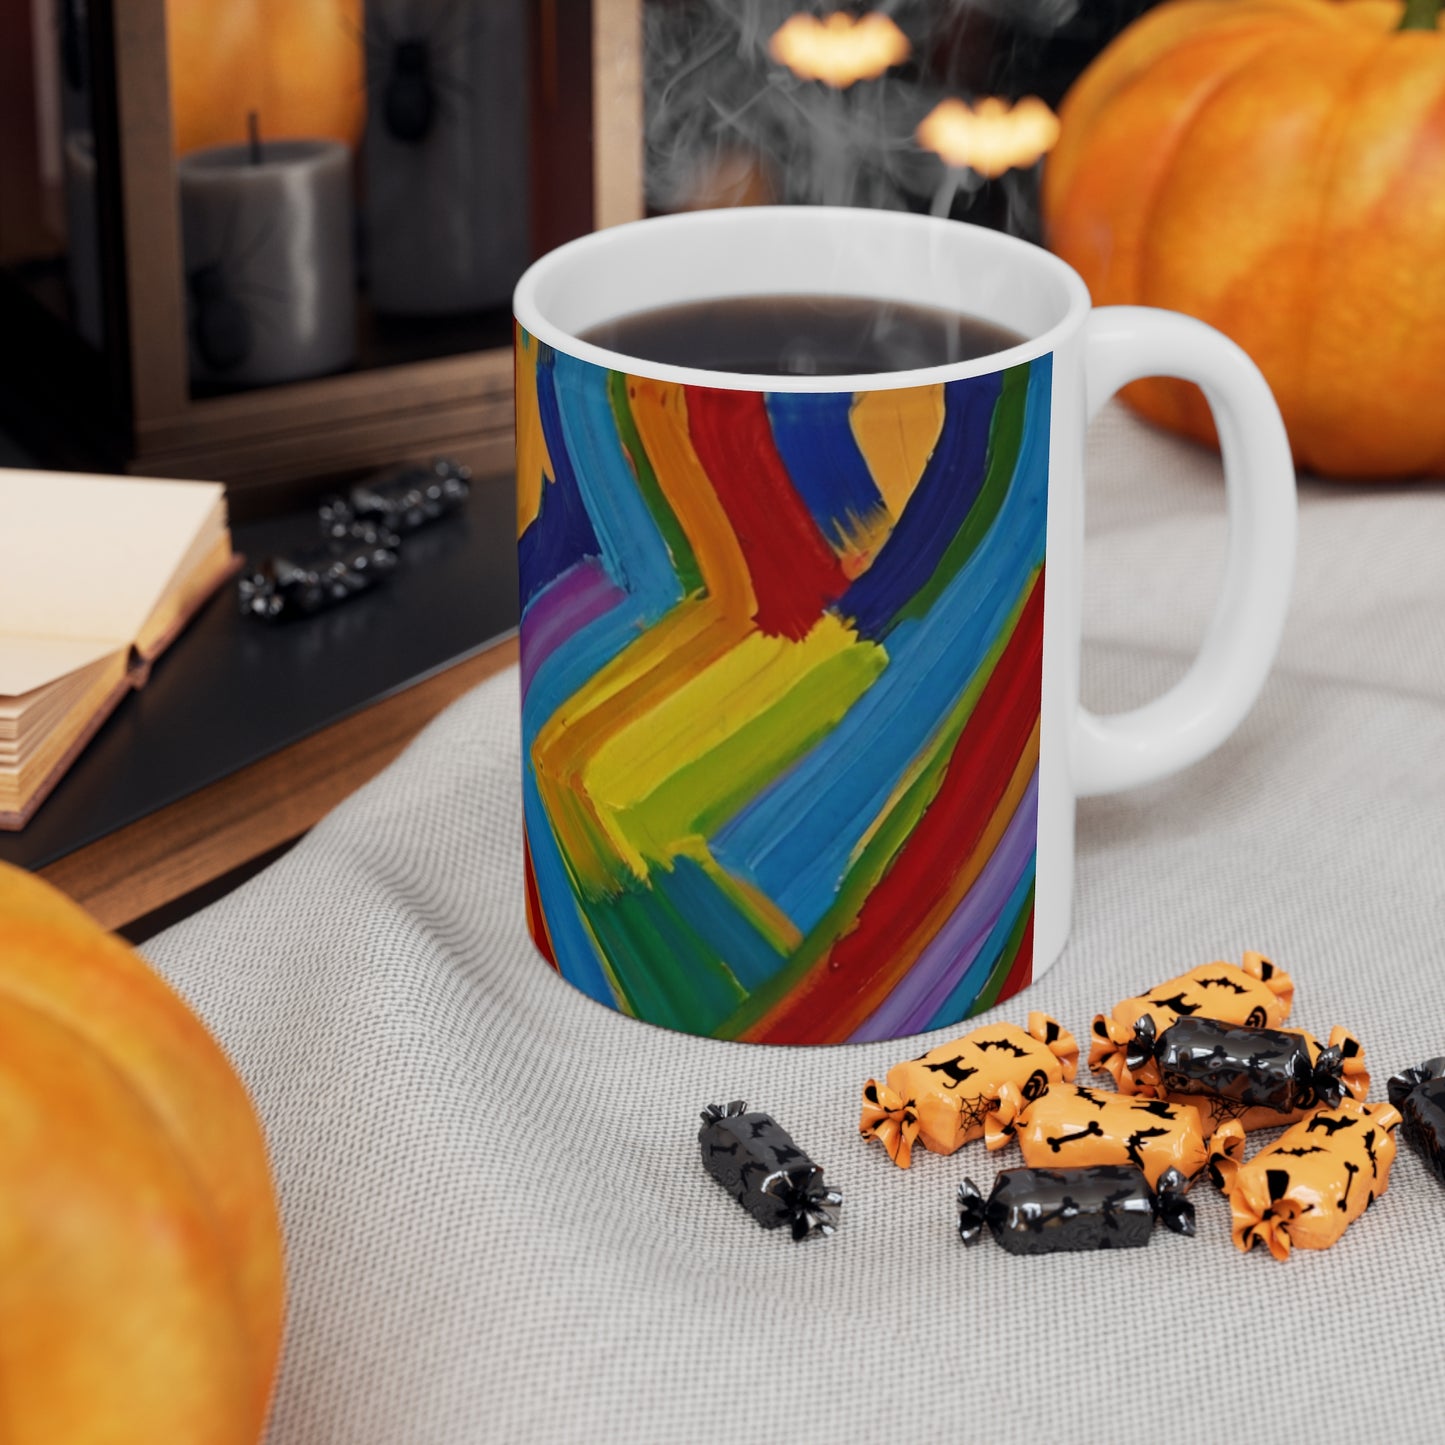 Messy Paint Zigzags Mug - Ceramic Coffee Mug 11oz